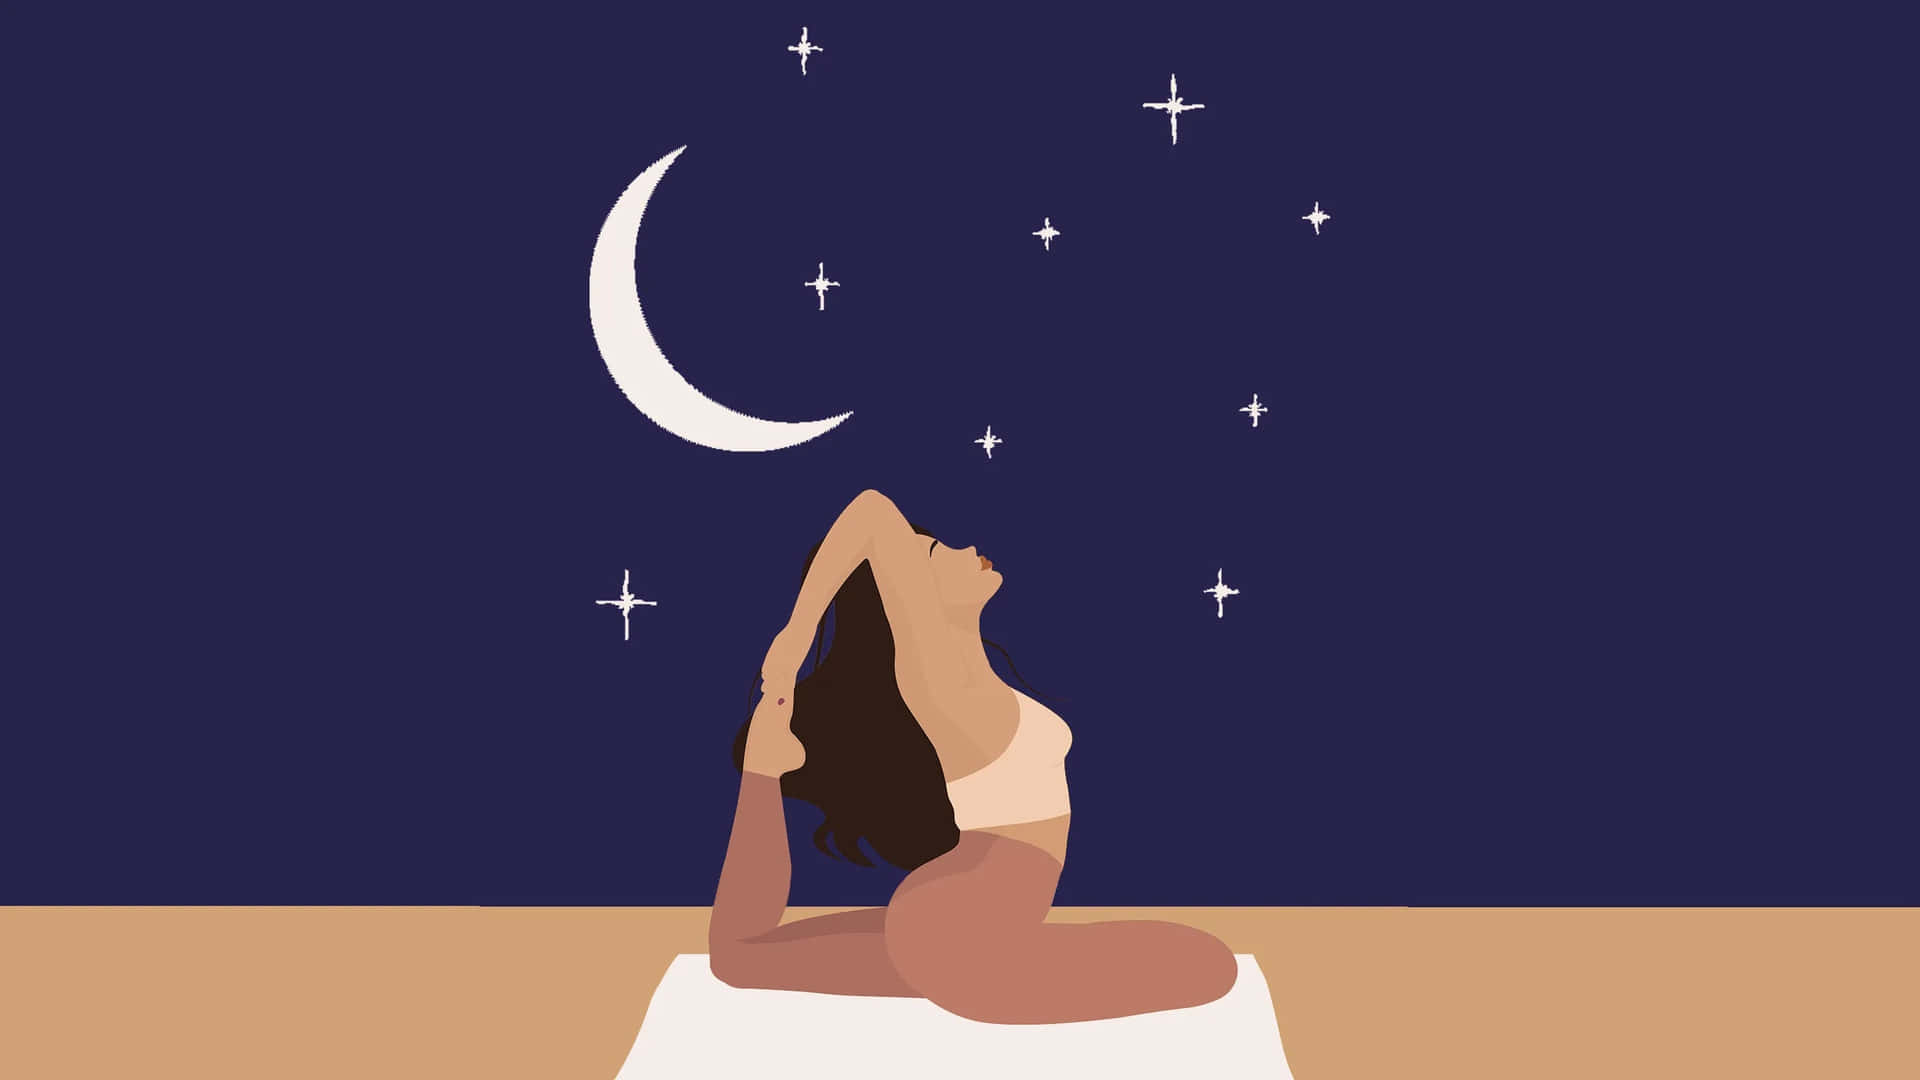 Enkvinna Utför Yoga På Natten Med Månen Och Stjärnorna.